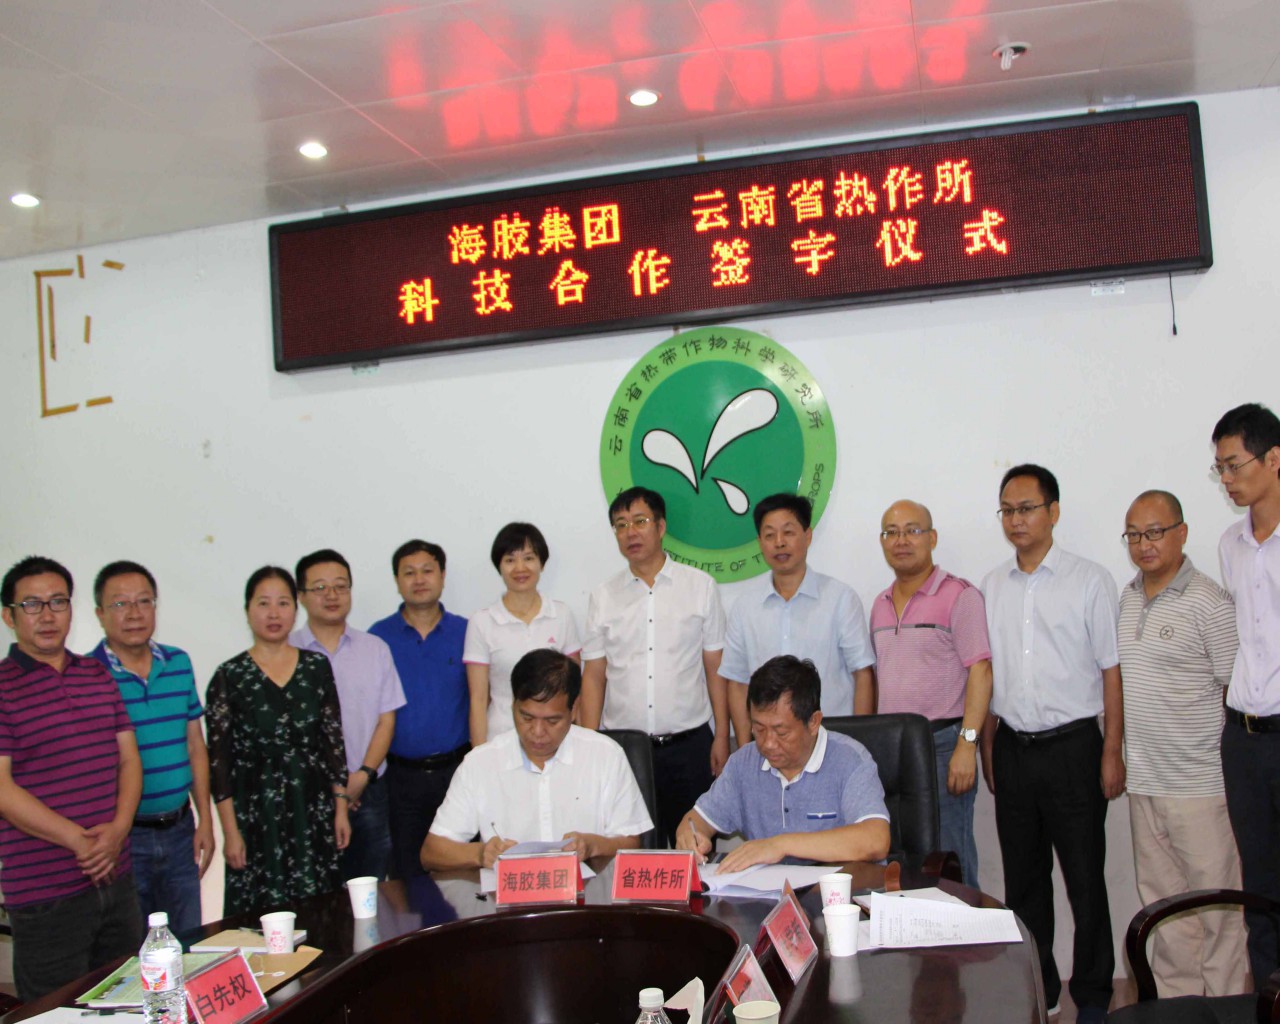 云南省热作所与海胶集团签订白坚木皮醇发明专利许可使用协议